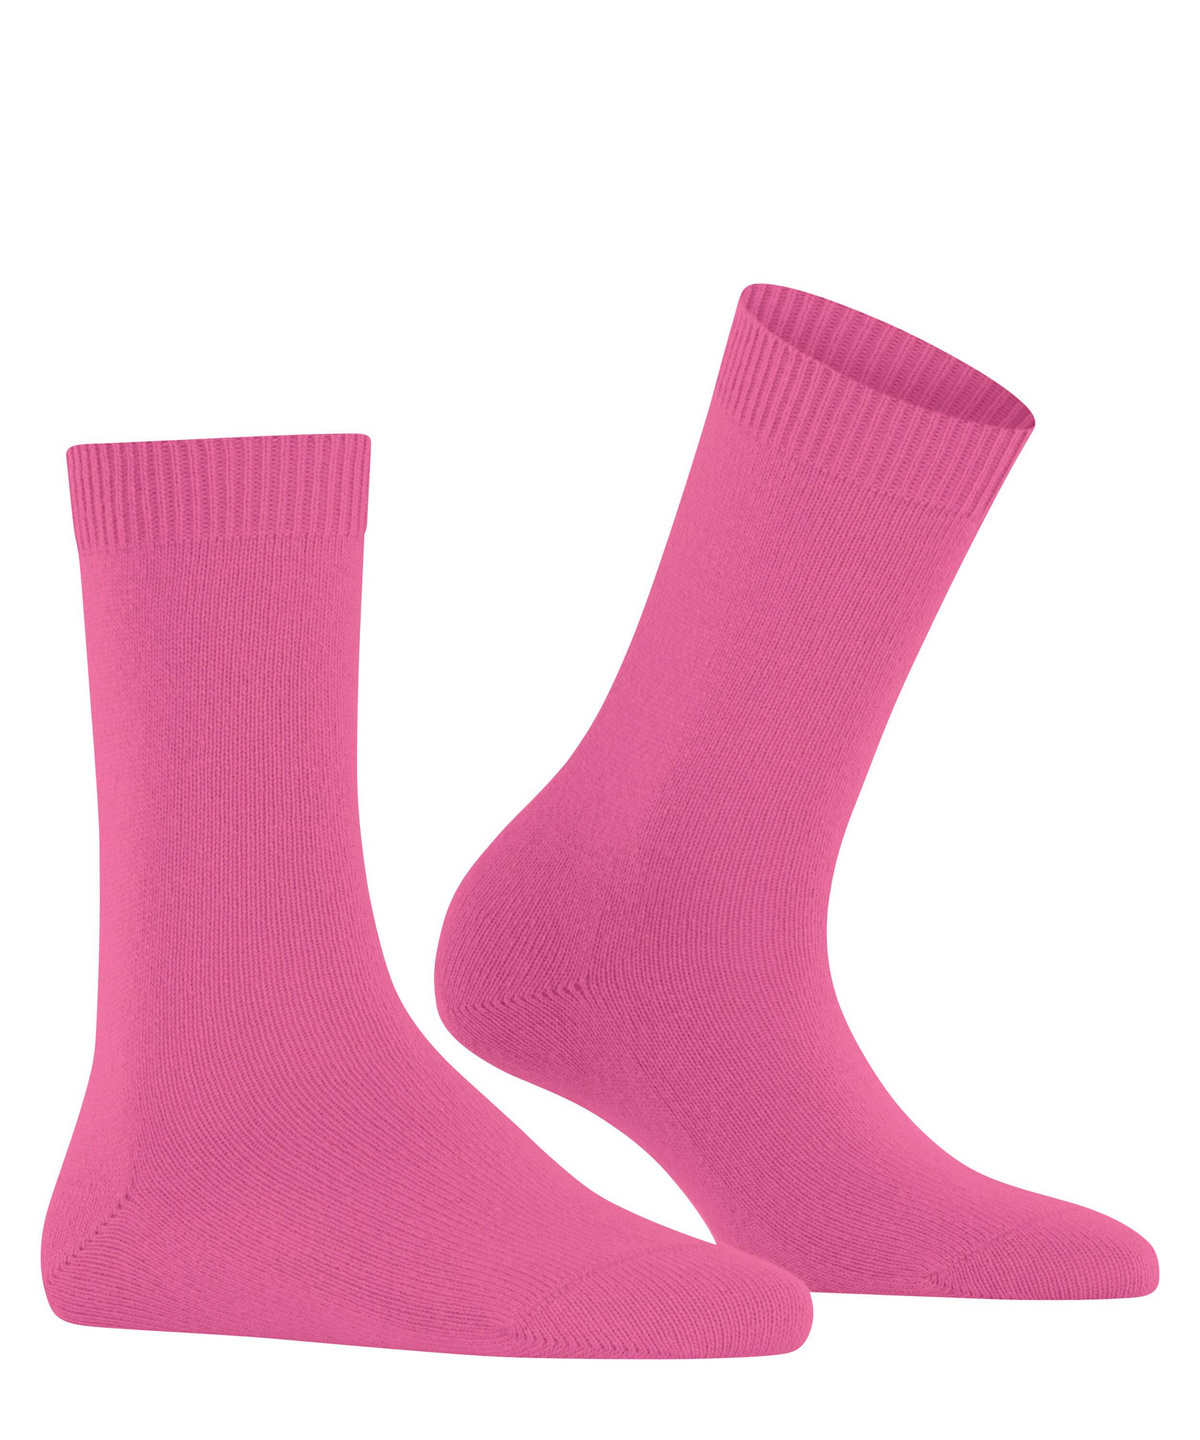 Damen-Socke Cosy Wool FALKE (Pink) 